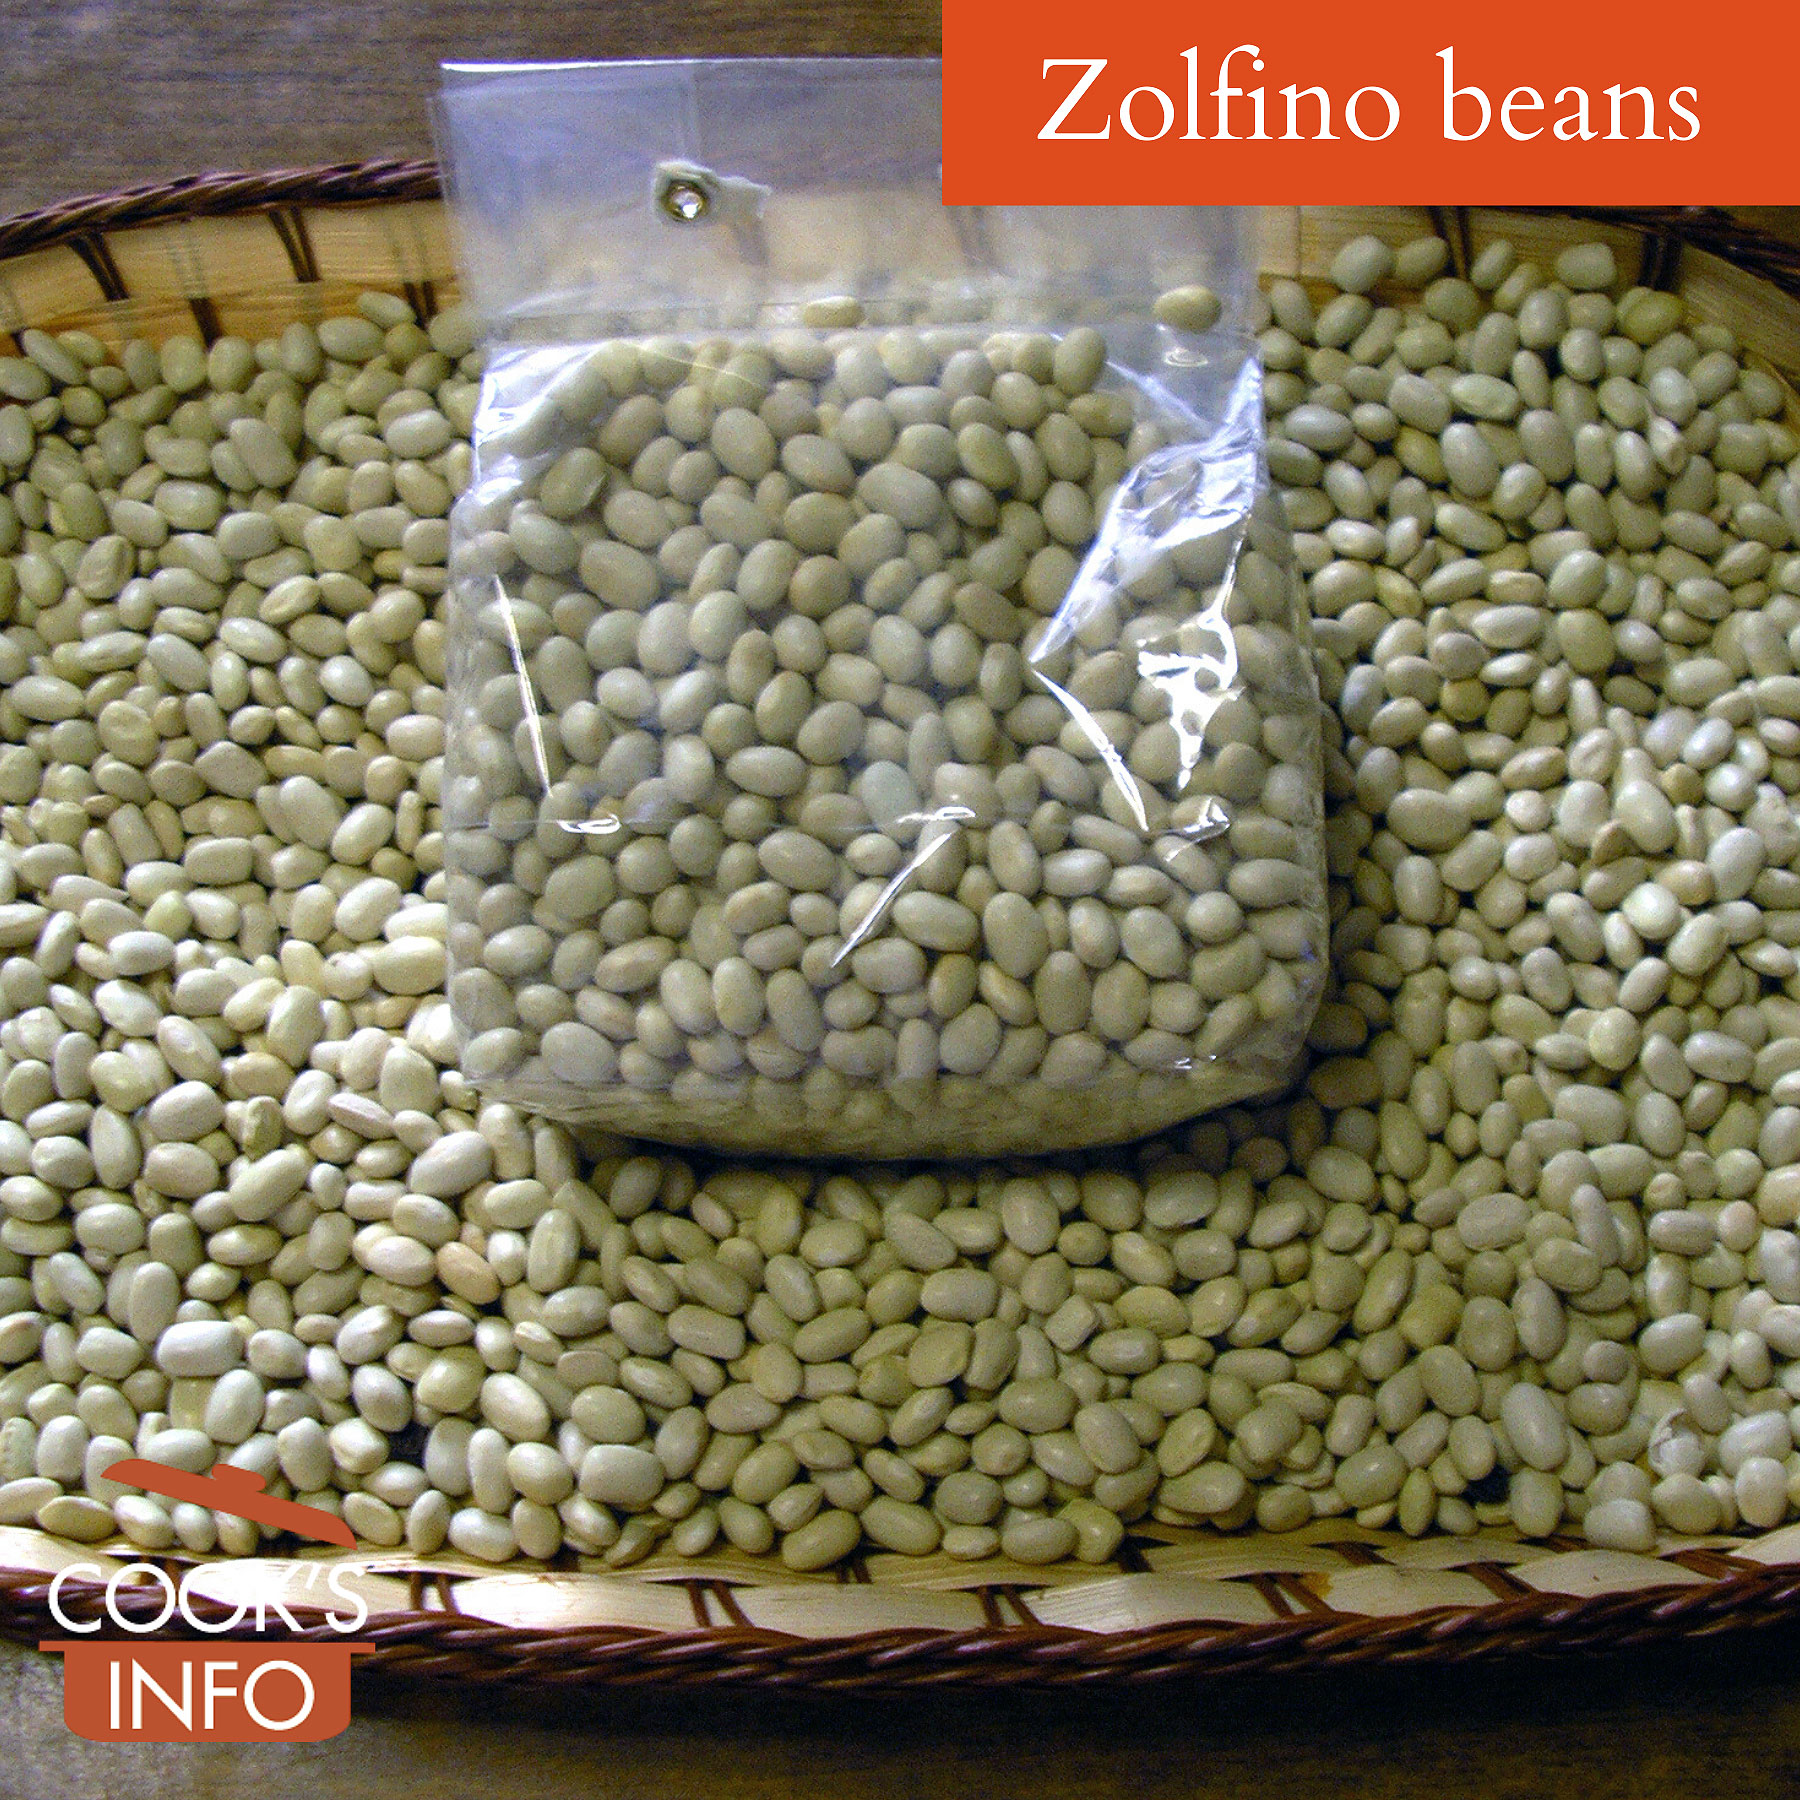 Zolfino beans